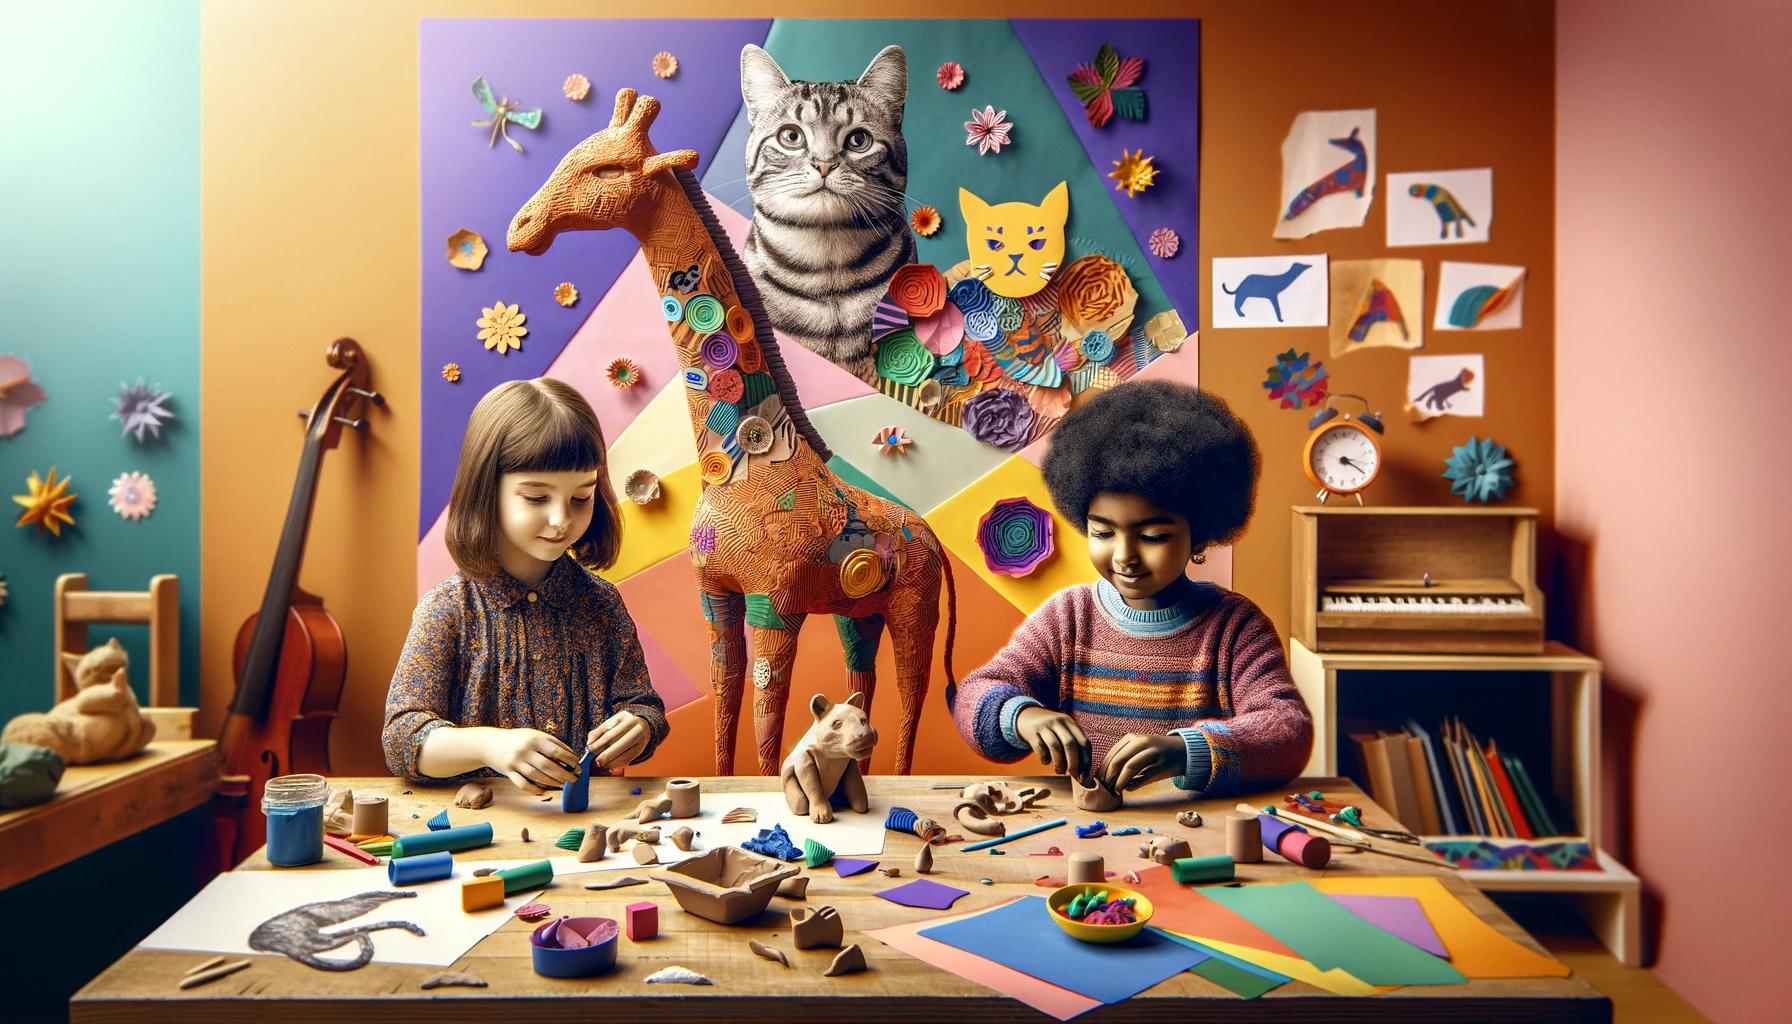 Créativité en Maternelle : Top 5 des Activités Artistiques pour Éveiller l'Imagination - atelier de collage, de peinture et de modelage avec les enfants de maternelle